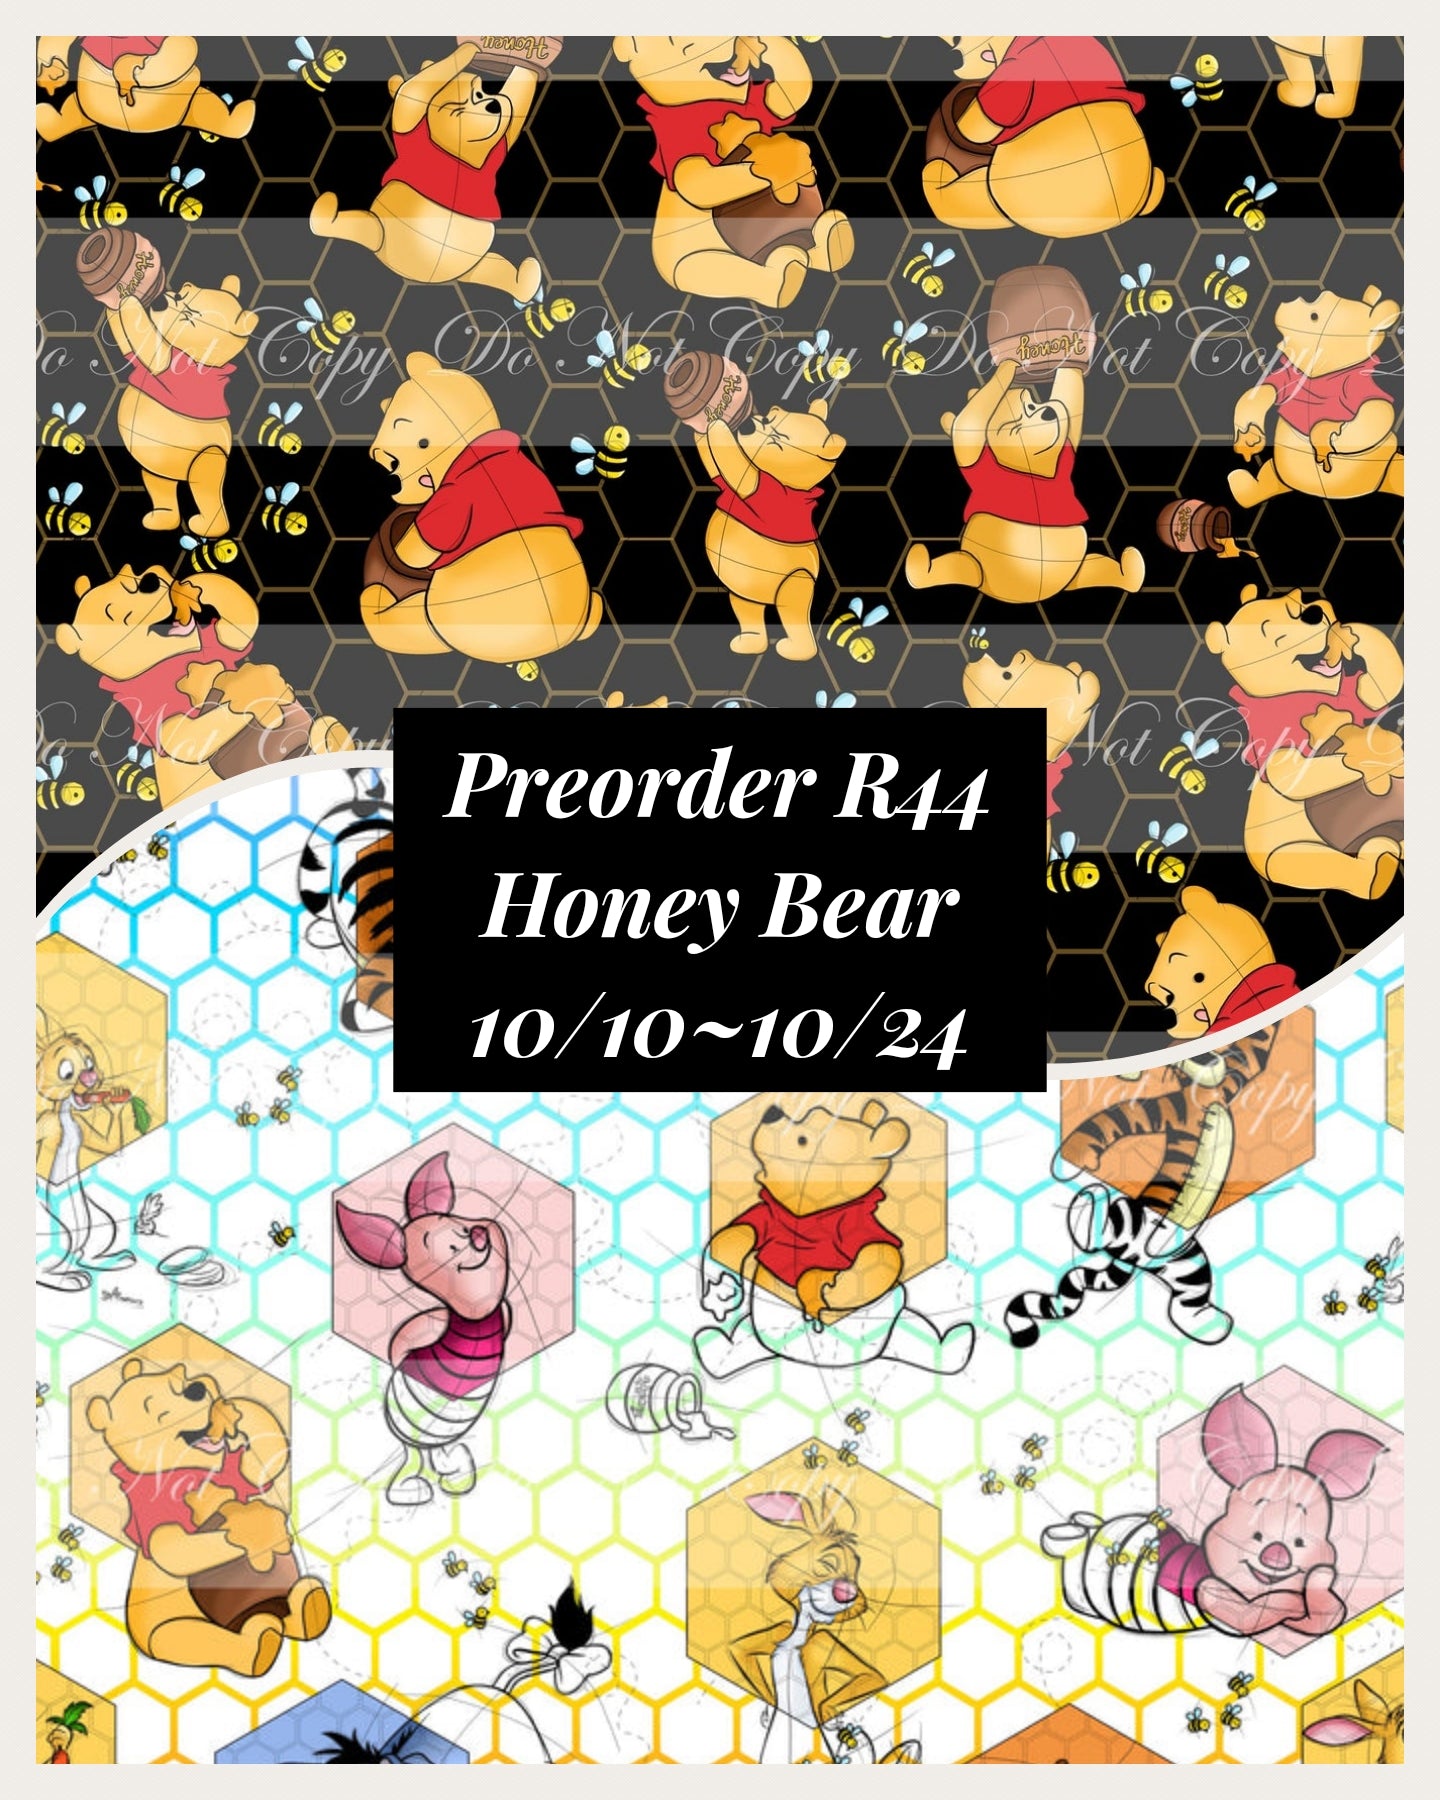 PREORDER R44 - Honey Bear